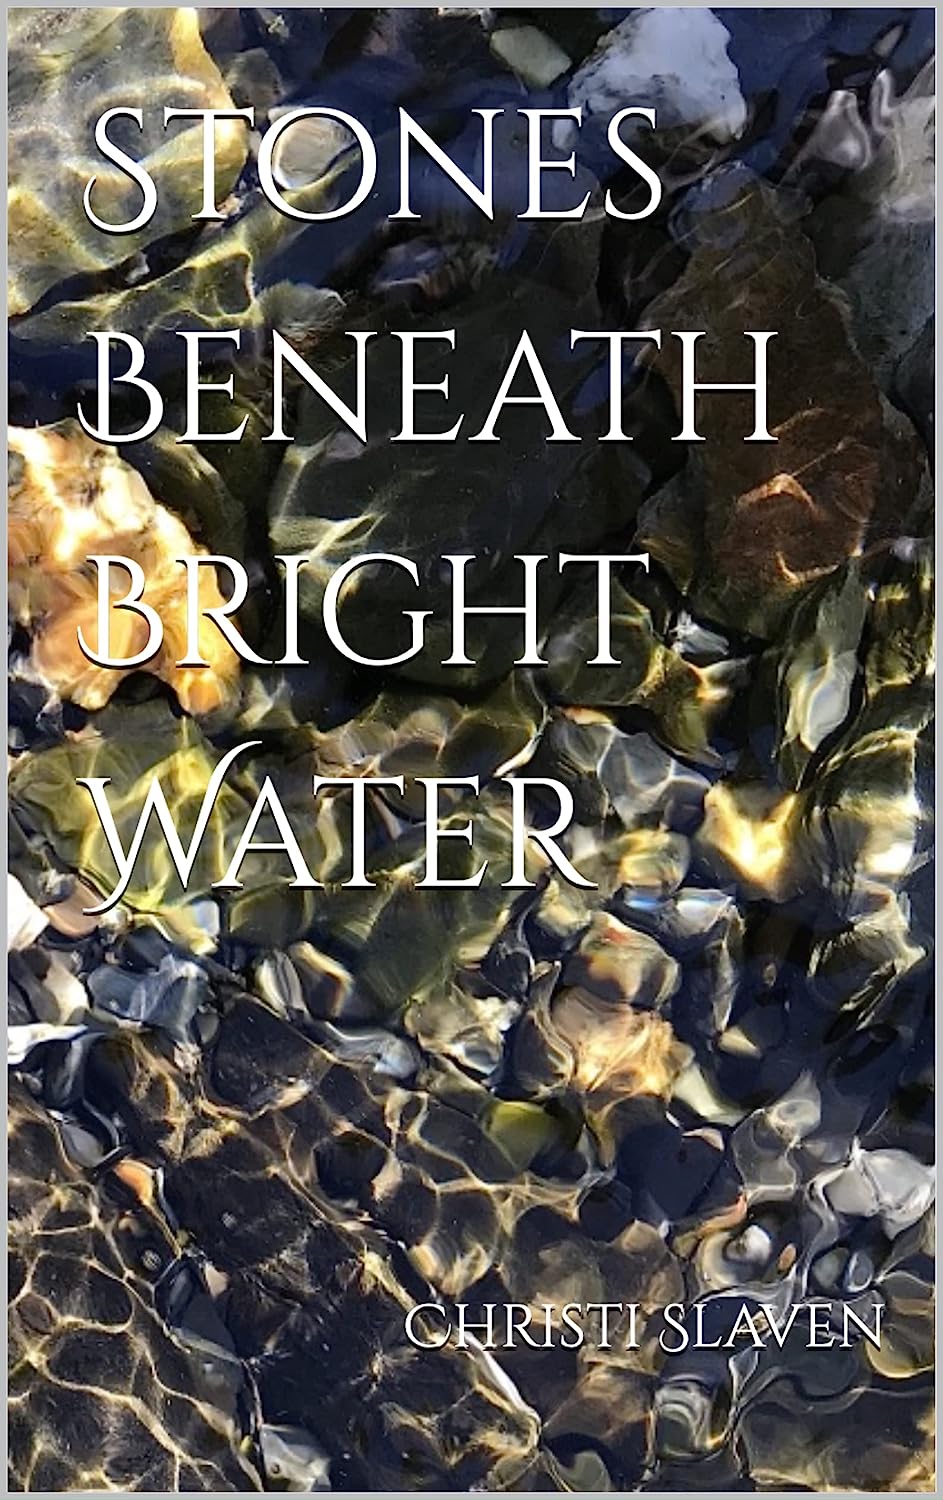 Stones Beneath Bright Water